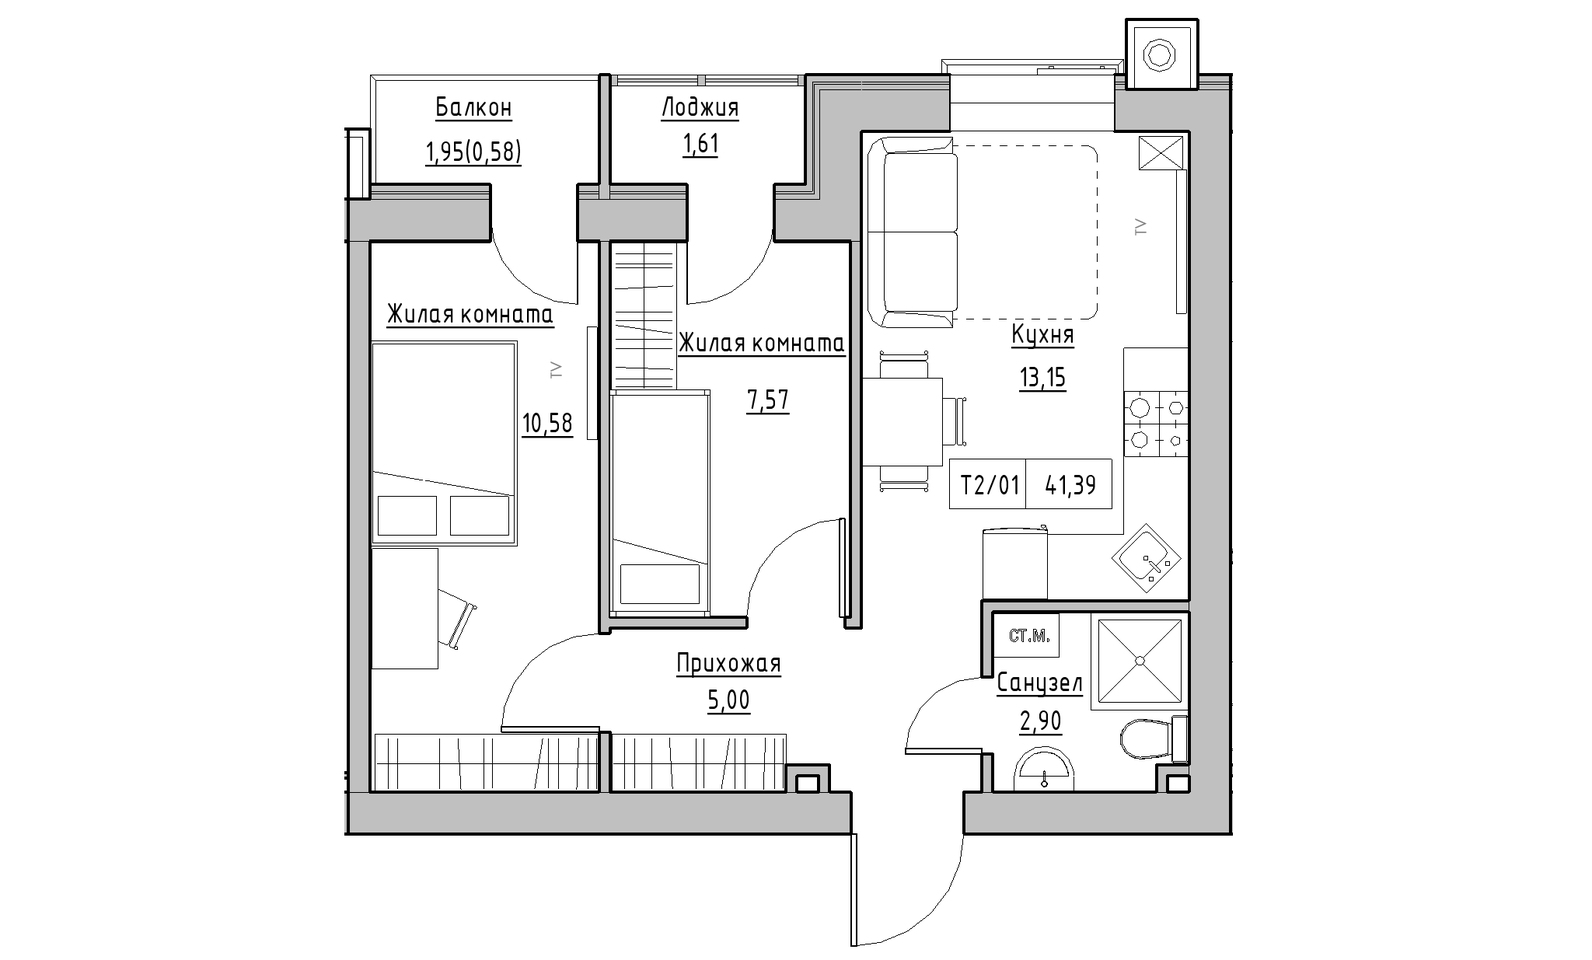 Планування 2-к квартира площею 41.39м2, KS-014-04/0005.